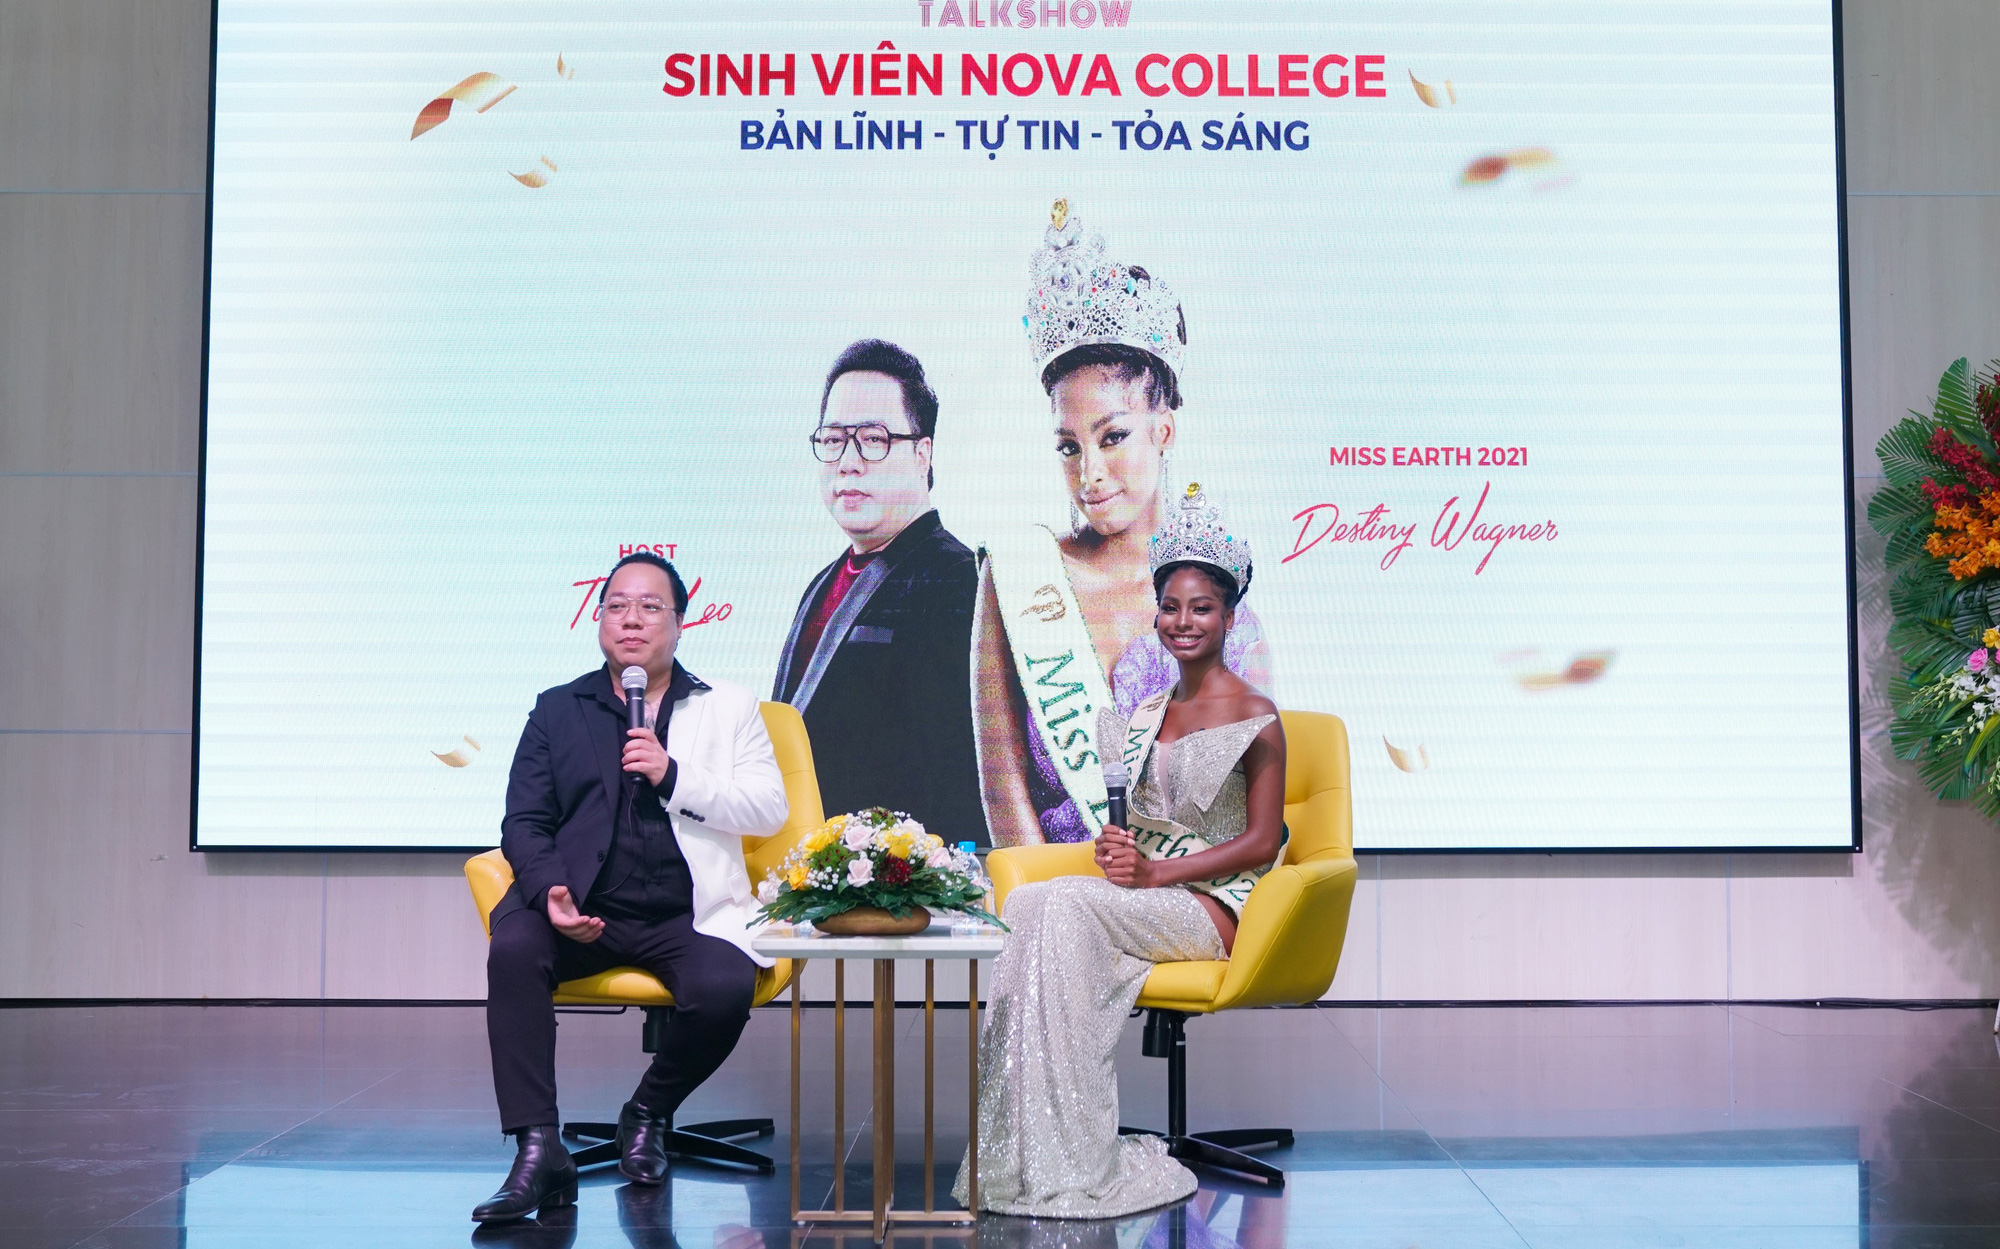 Gặp gỡ sinh viên Nova College khiến Miss Earth 2021 thán phục trước cách trả lời sâu sắc và tiếng Anh lưu loát